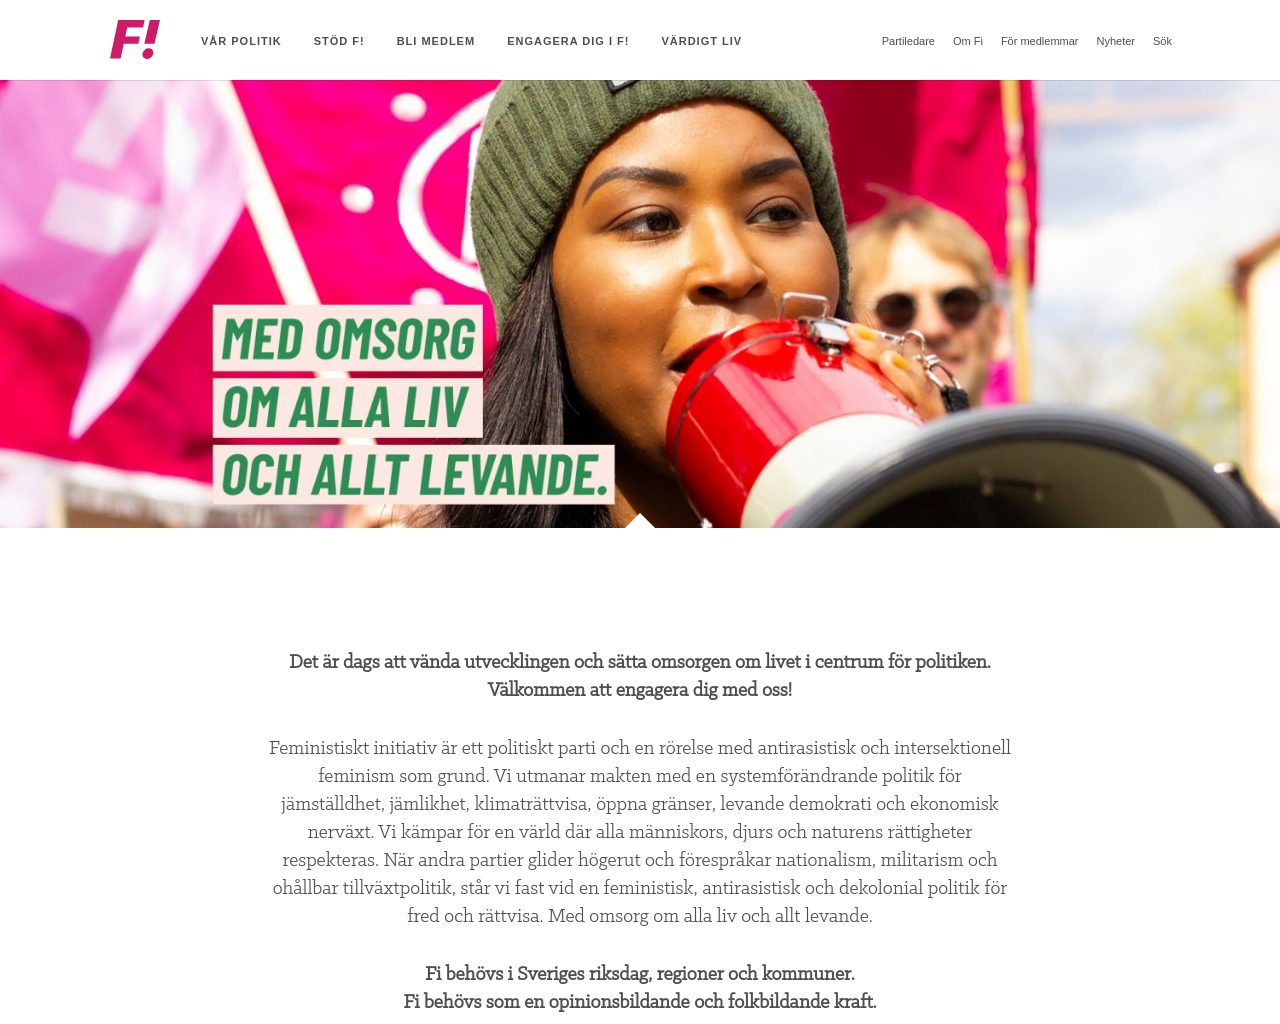 feministisktinitiativ.se